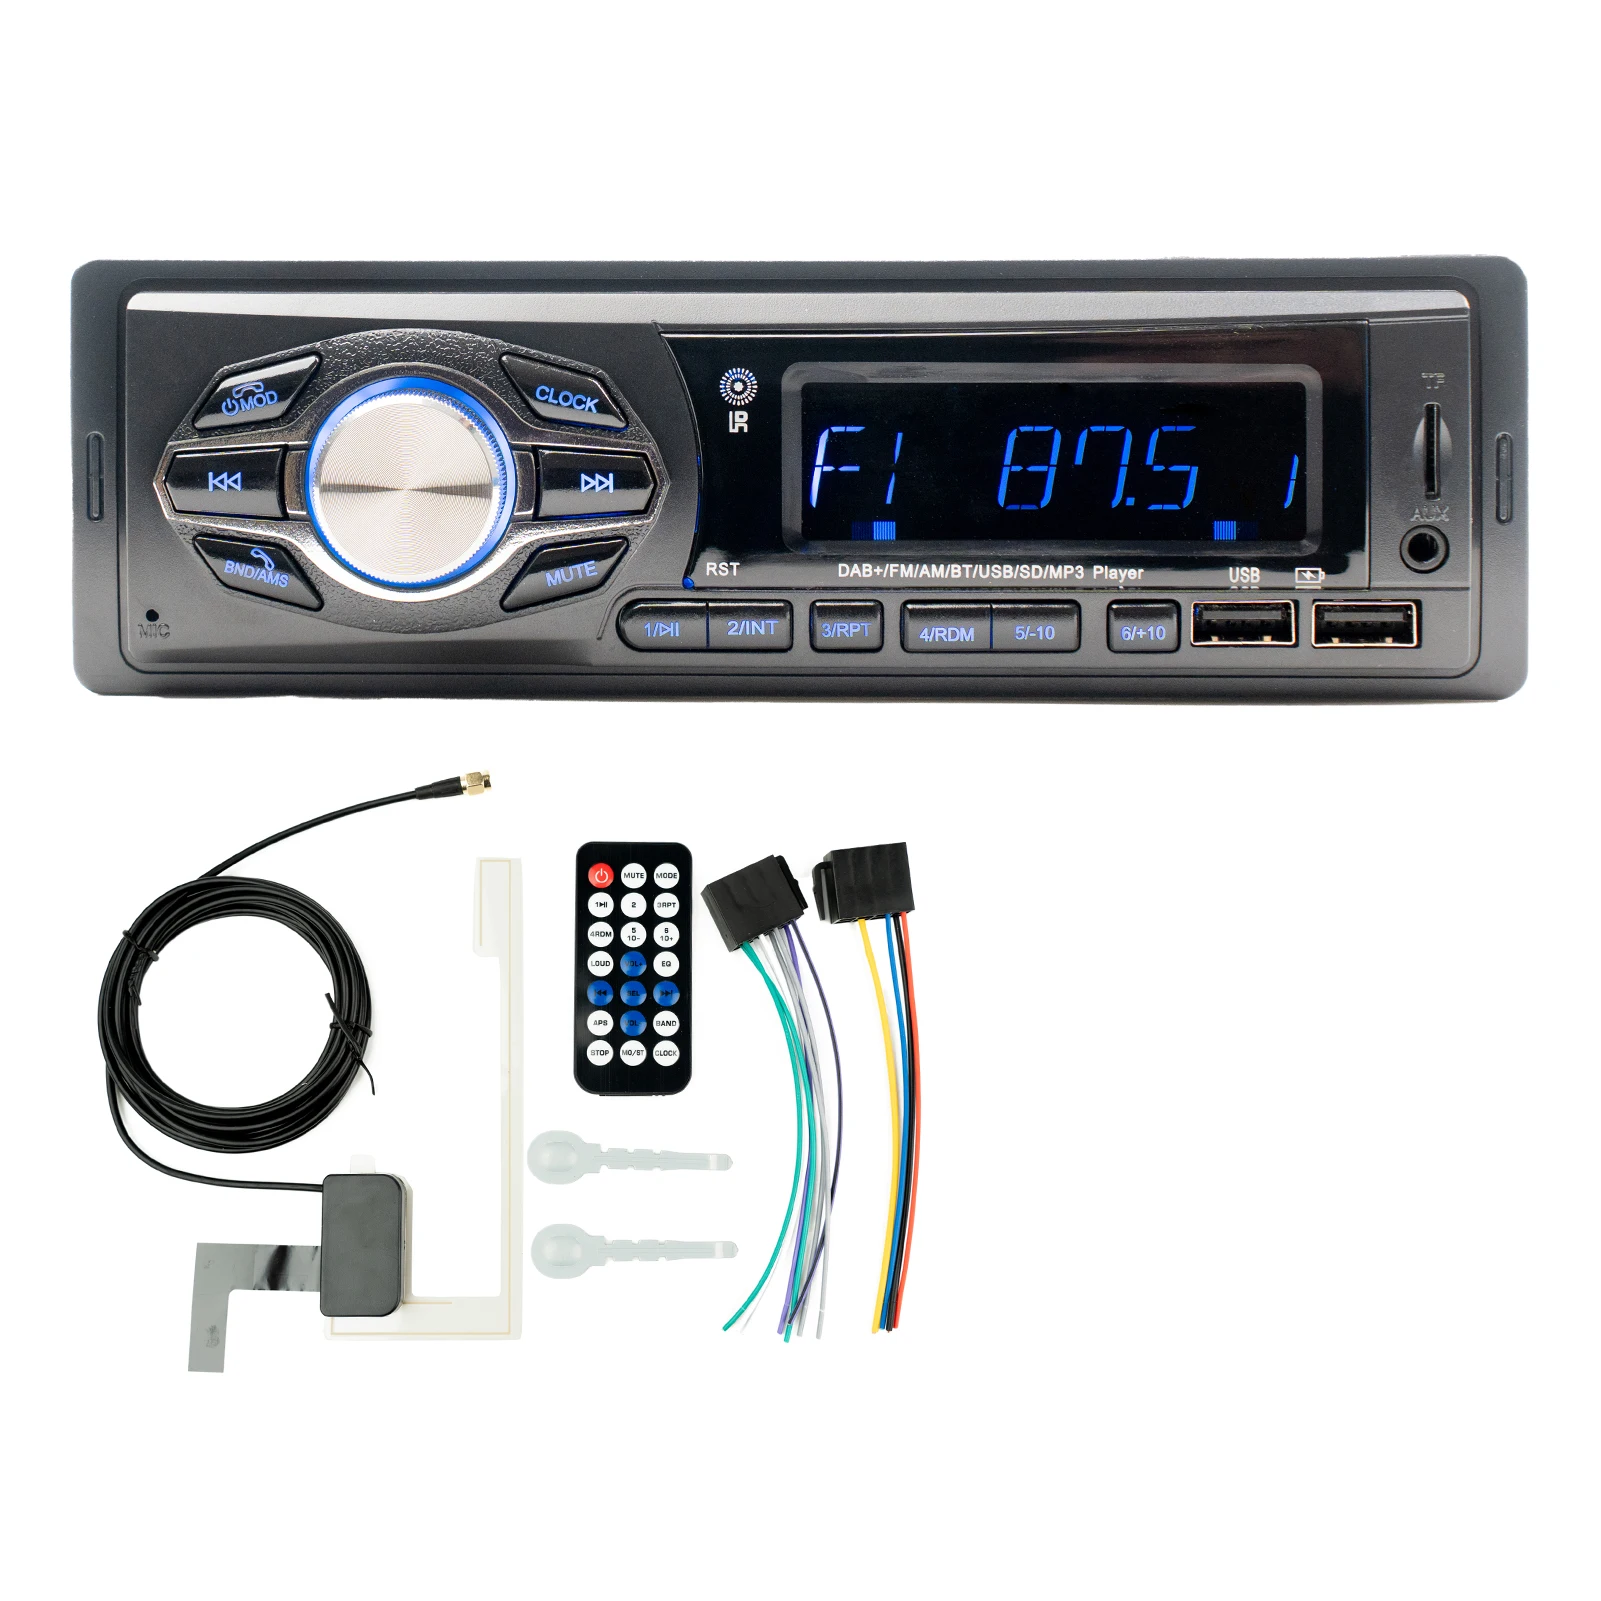 

Автомобильный стереоприемник с ЖК-дисплеем, FM/AM/DAB радио для автомобиля BT 5,0, звонки без использования рук, воспроизведение USB